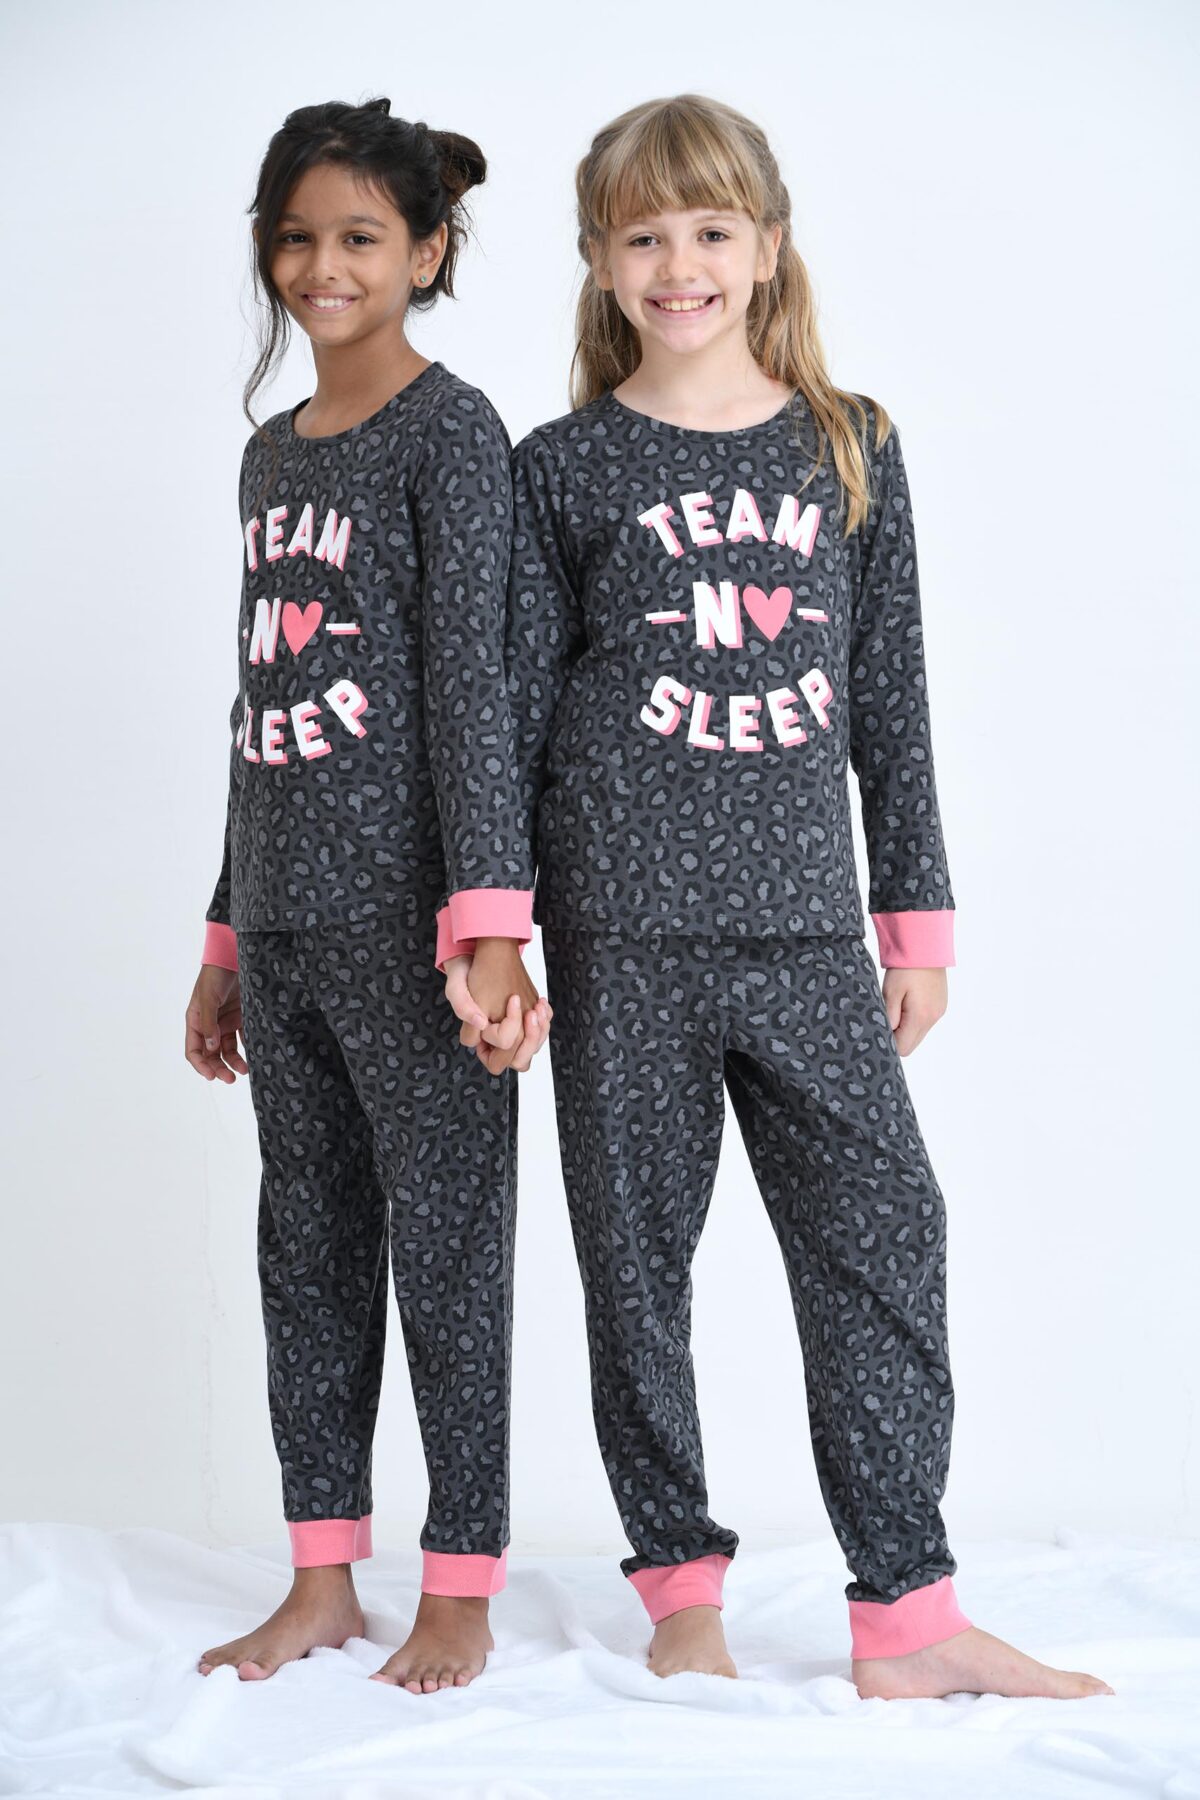 team no sleep girl sleepwear